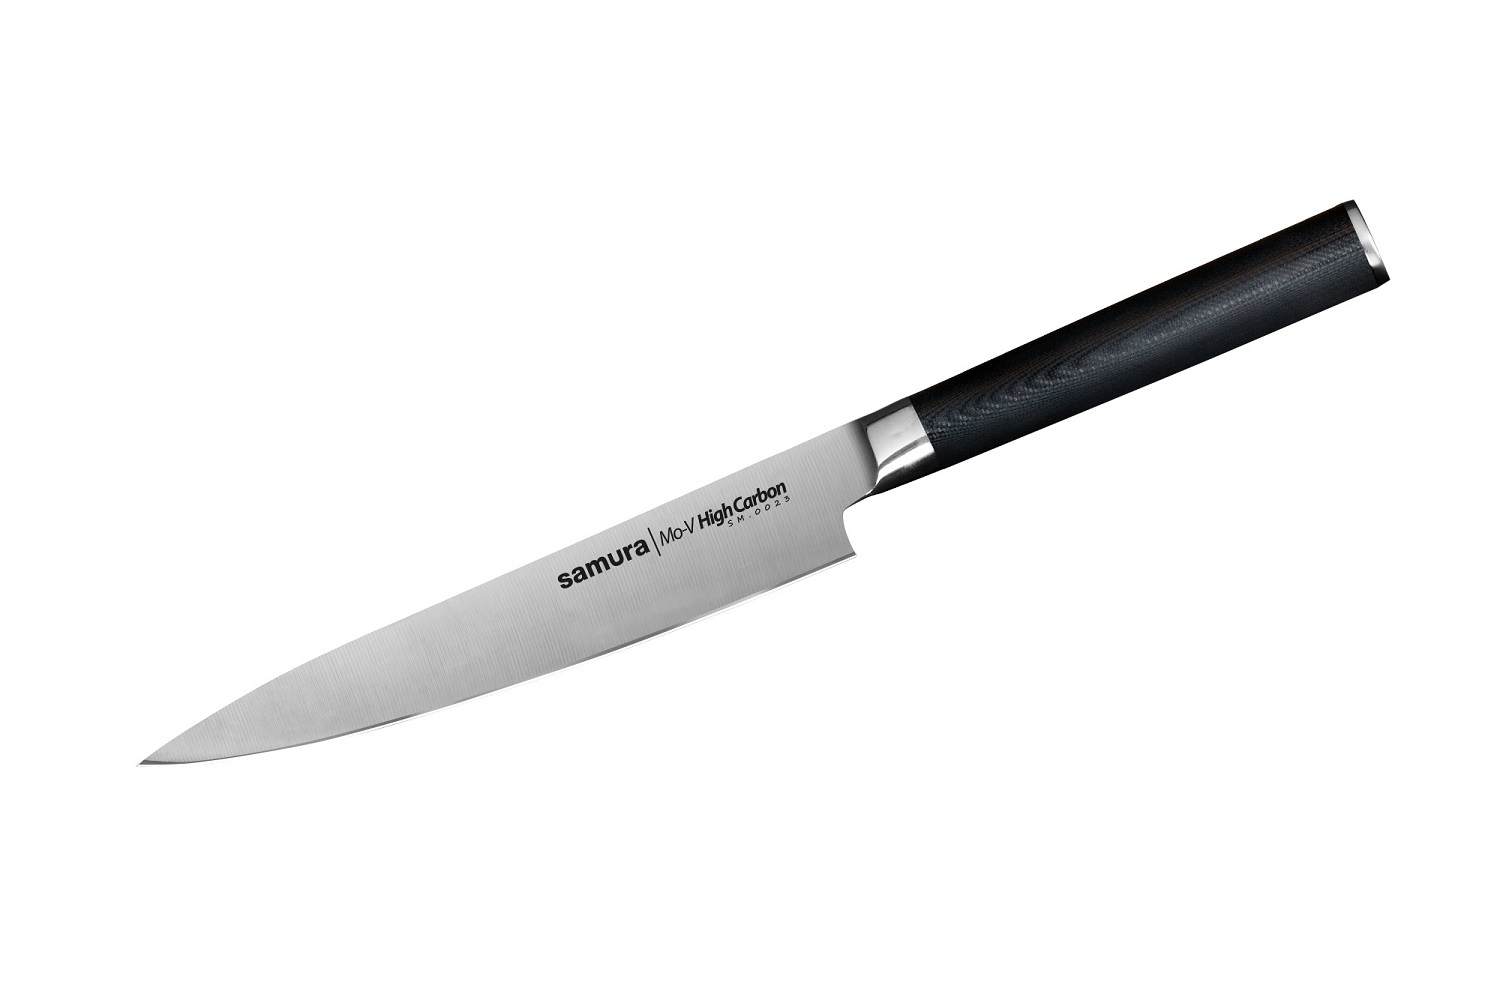 Нож Samura универсальный Mo-V, 15 см, G-10 нож универсальный mo v 12 5 см sm 0021 k samura